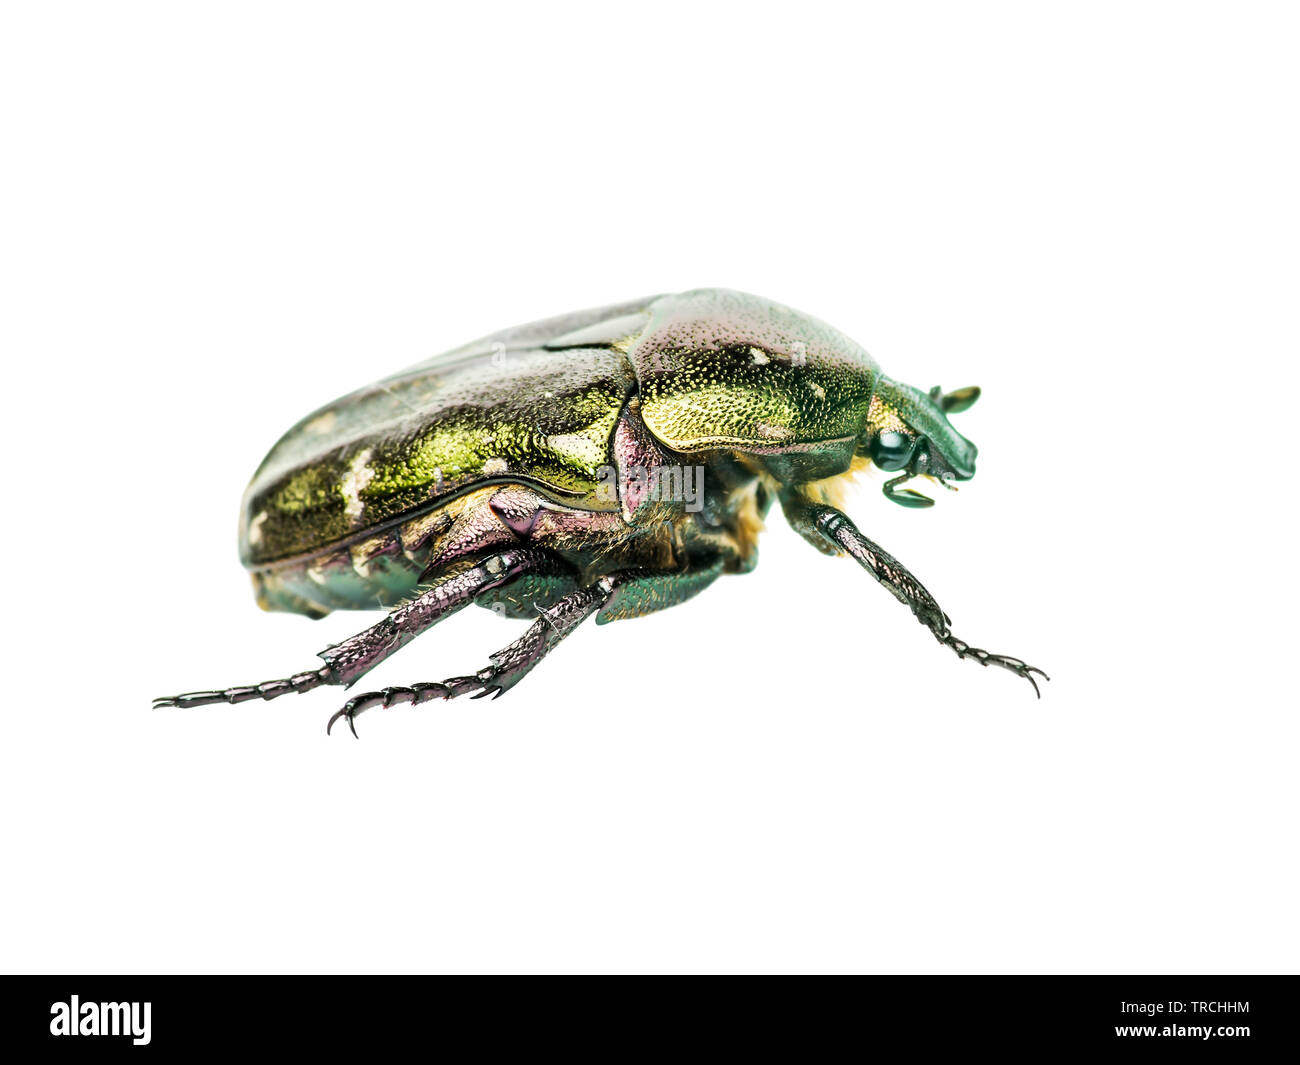 Cetonia aurata fleur vert Chafer Beetle Bug Juin insecte Macro isolé sur fond blanc Banque D'Images